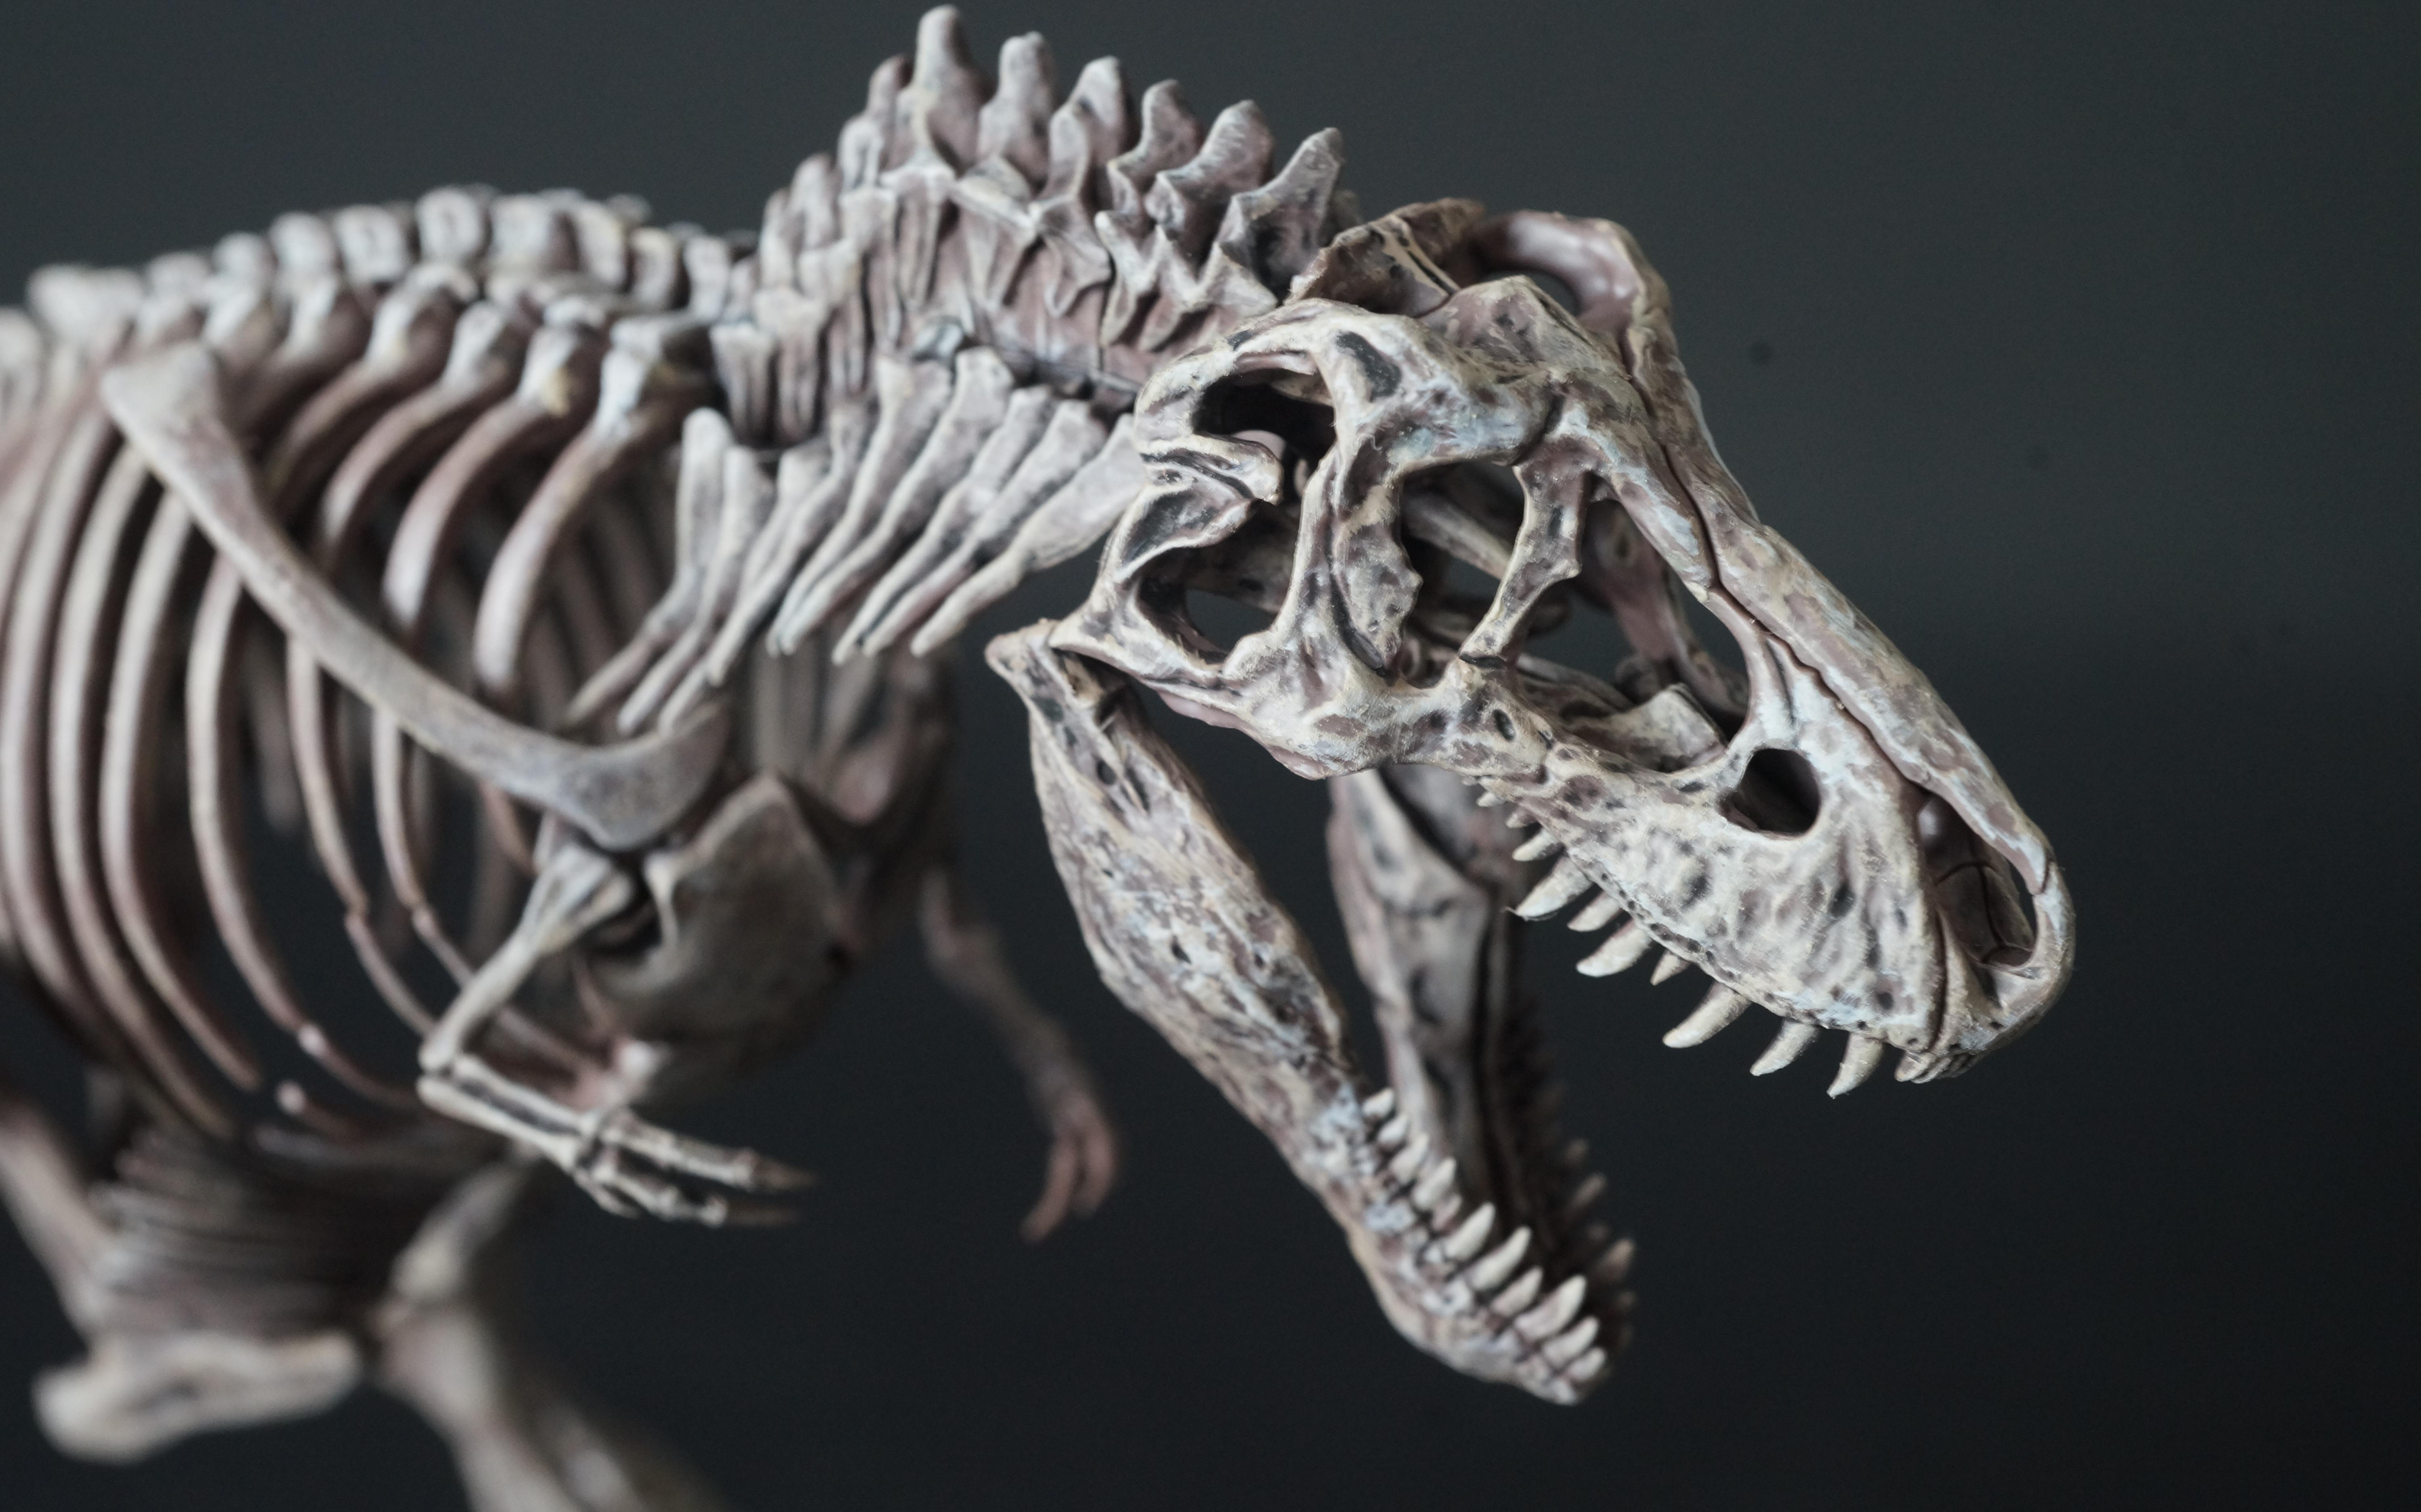 【万代】塑料拼装霸王龙骨骼化石模型